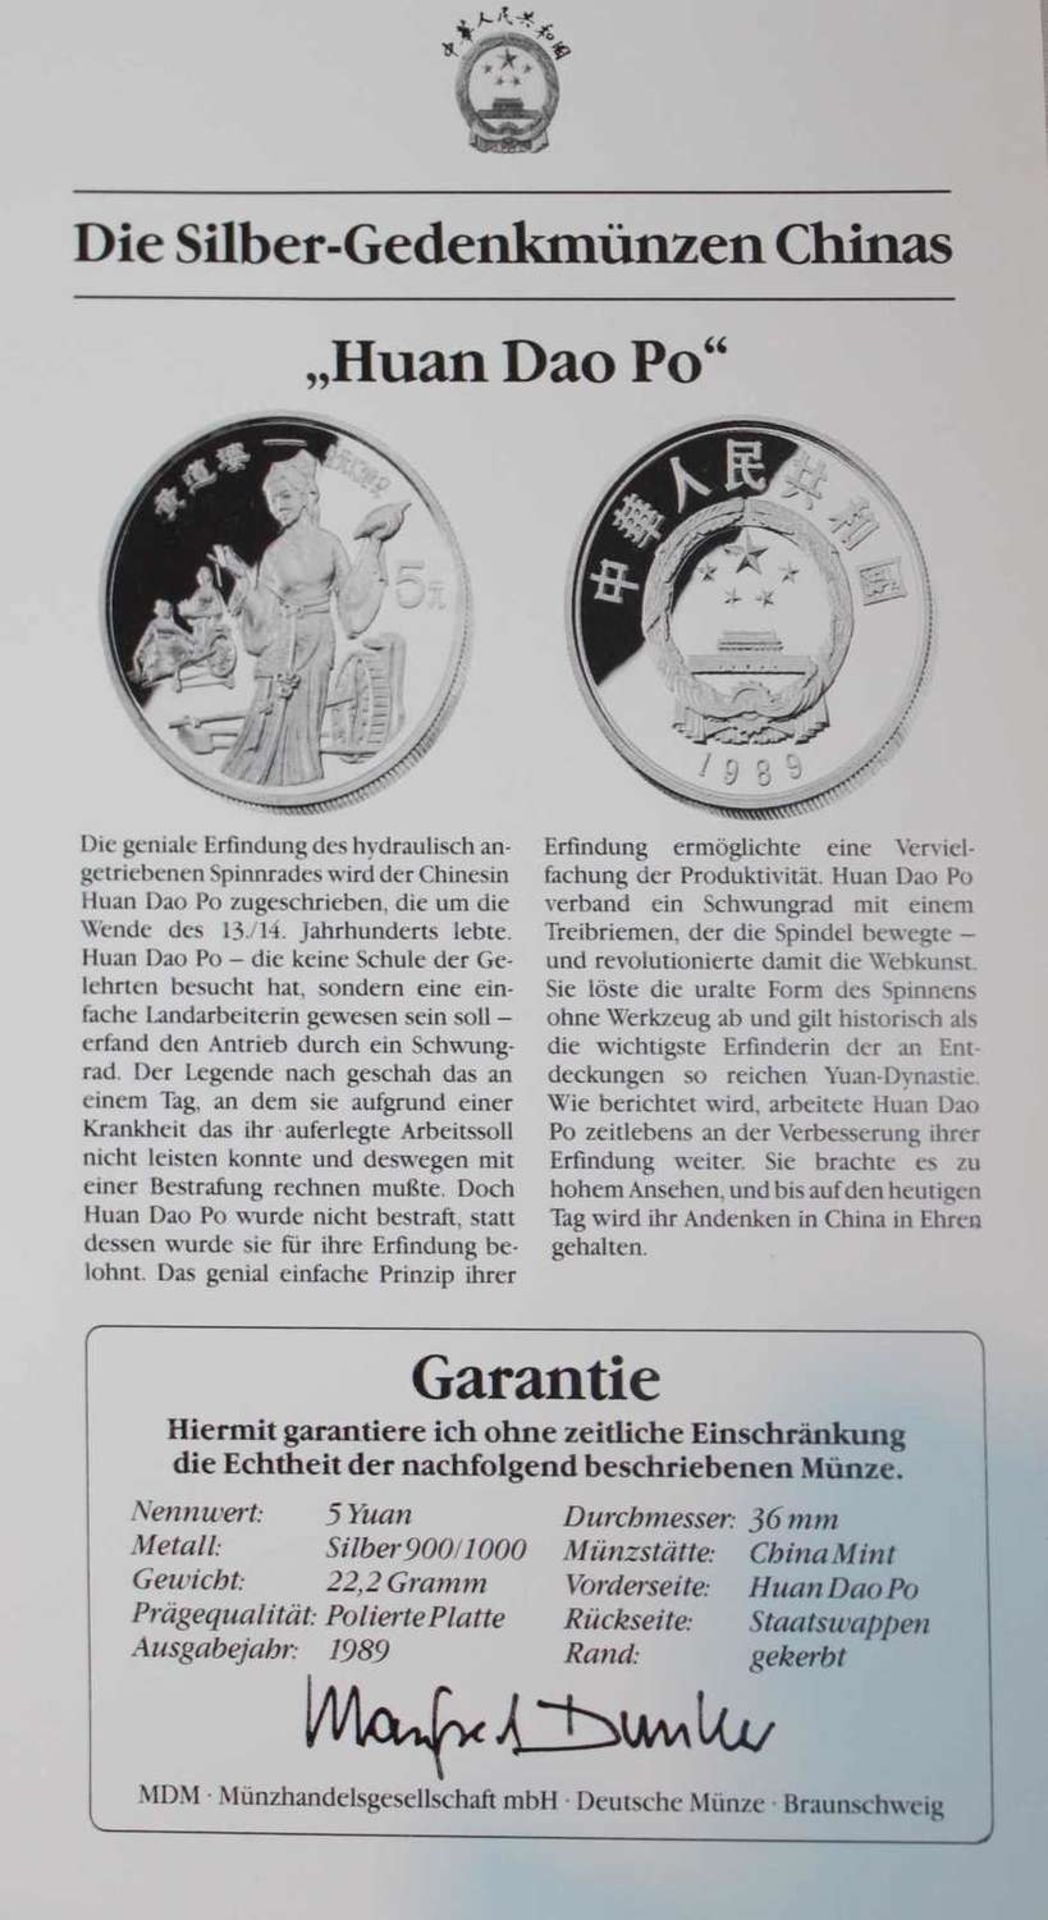 China 1989, 5 Yuan - Silbermünze "Huan Dao Po". Silber 900. Gewicht: 22,2 gr.. In Kapsel. Erhaltung: - Bild 3 aus 3